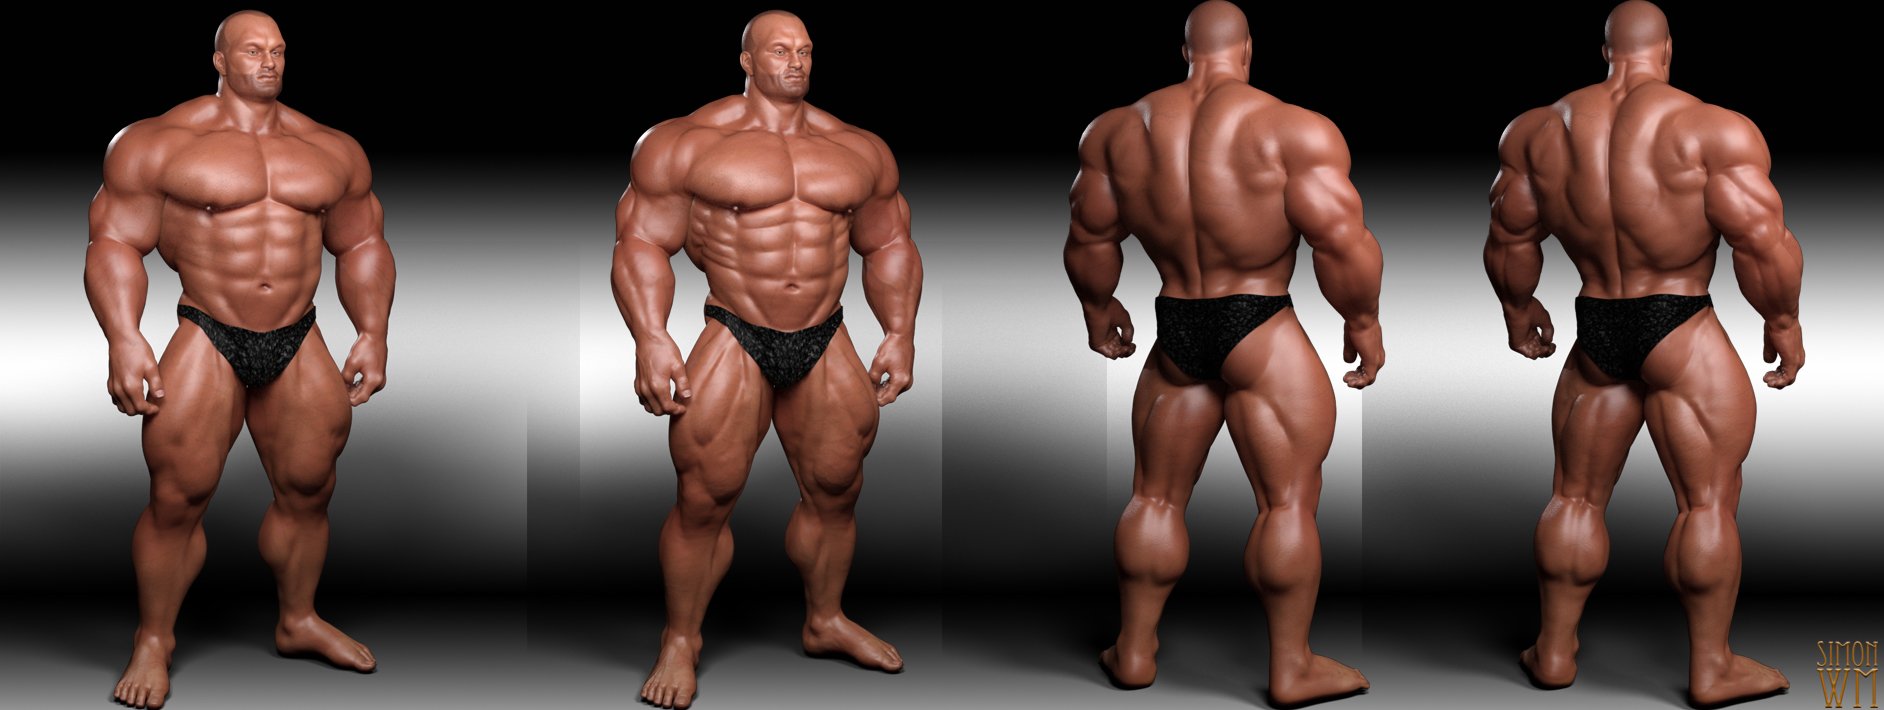 Hercules HD for Genesis 3 Male by: SimonWM, 3D Models by Daz 3D